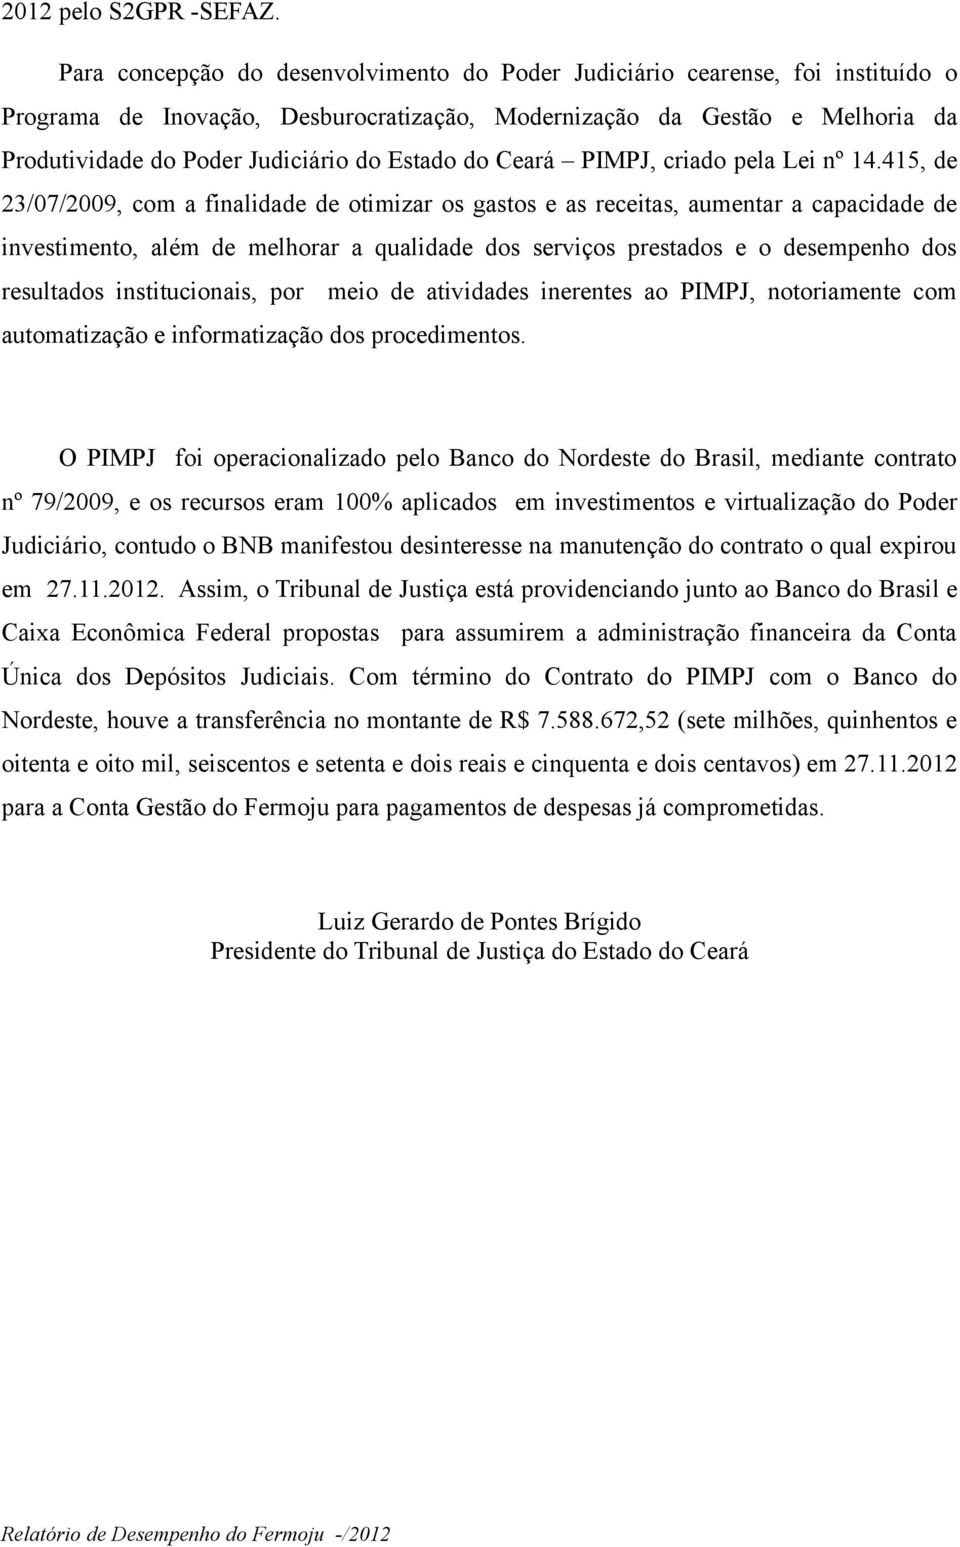 Estado do Ceará PIMPJ, criado pela Lei nº 14.